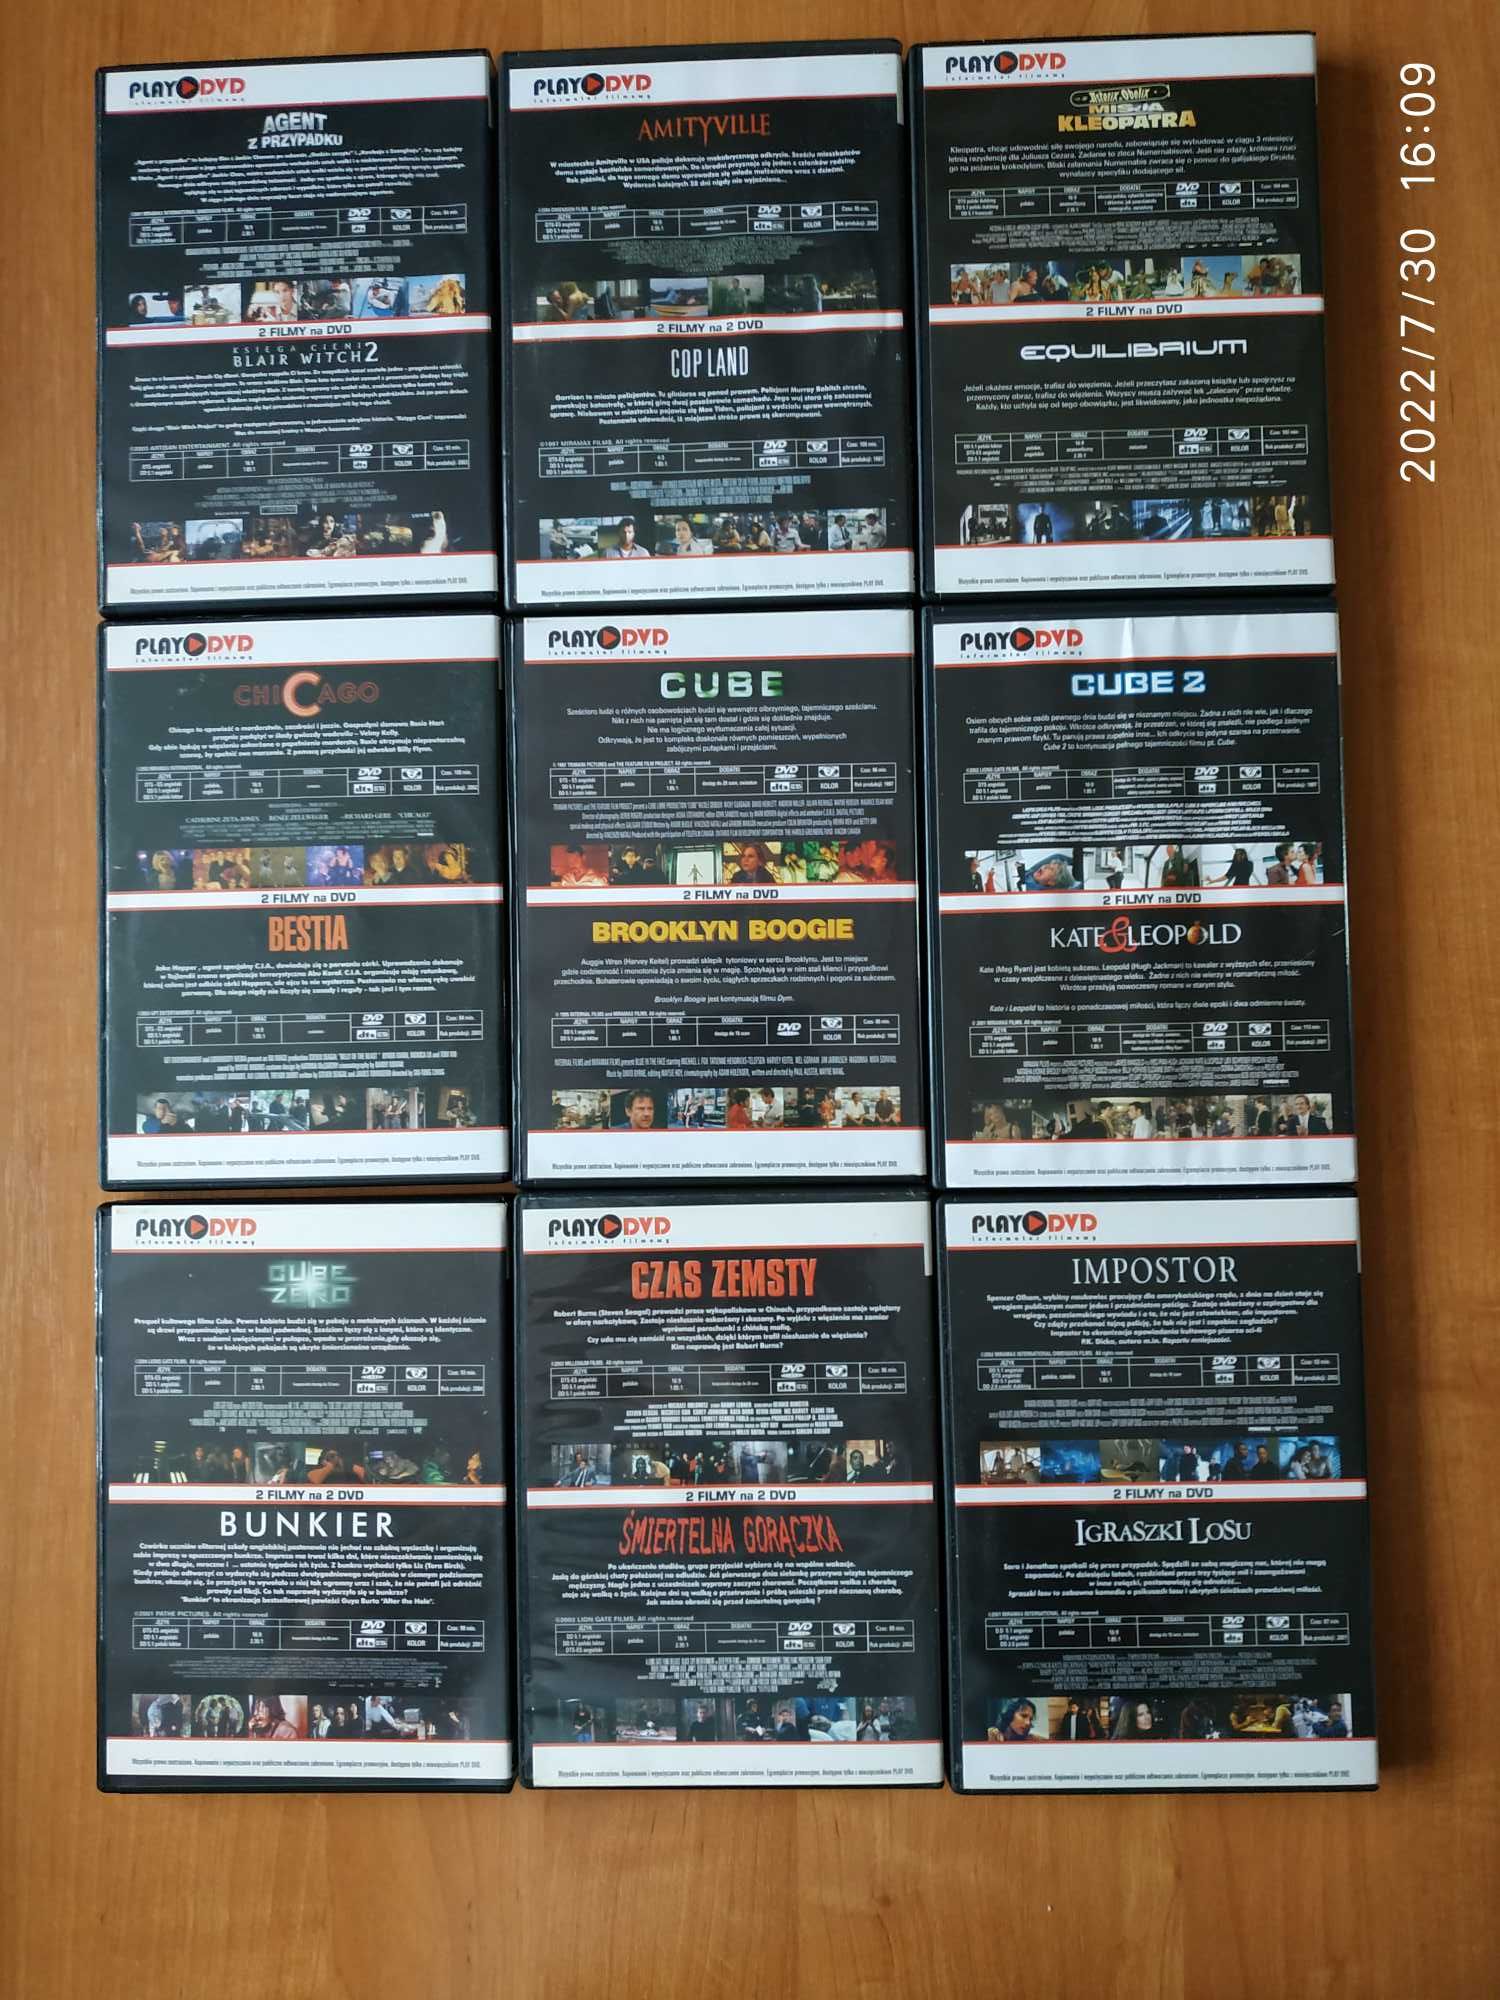 Wyprzedaż filmów - zestaw 34 płyt DVD z wydań Play DVD (Cube, Kruk)